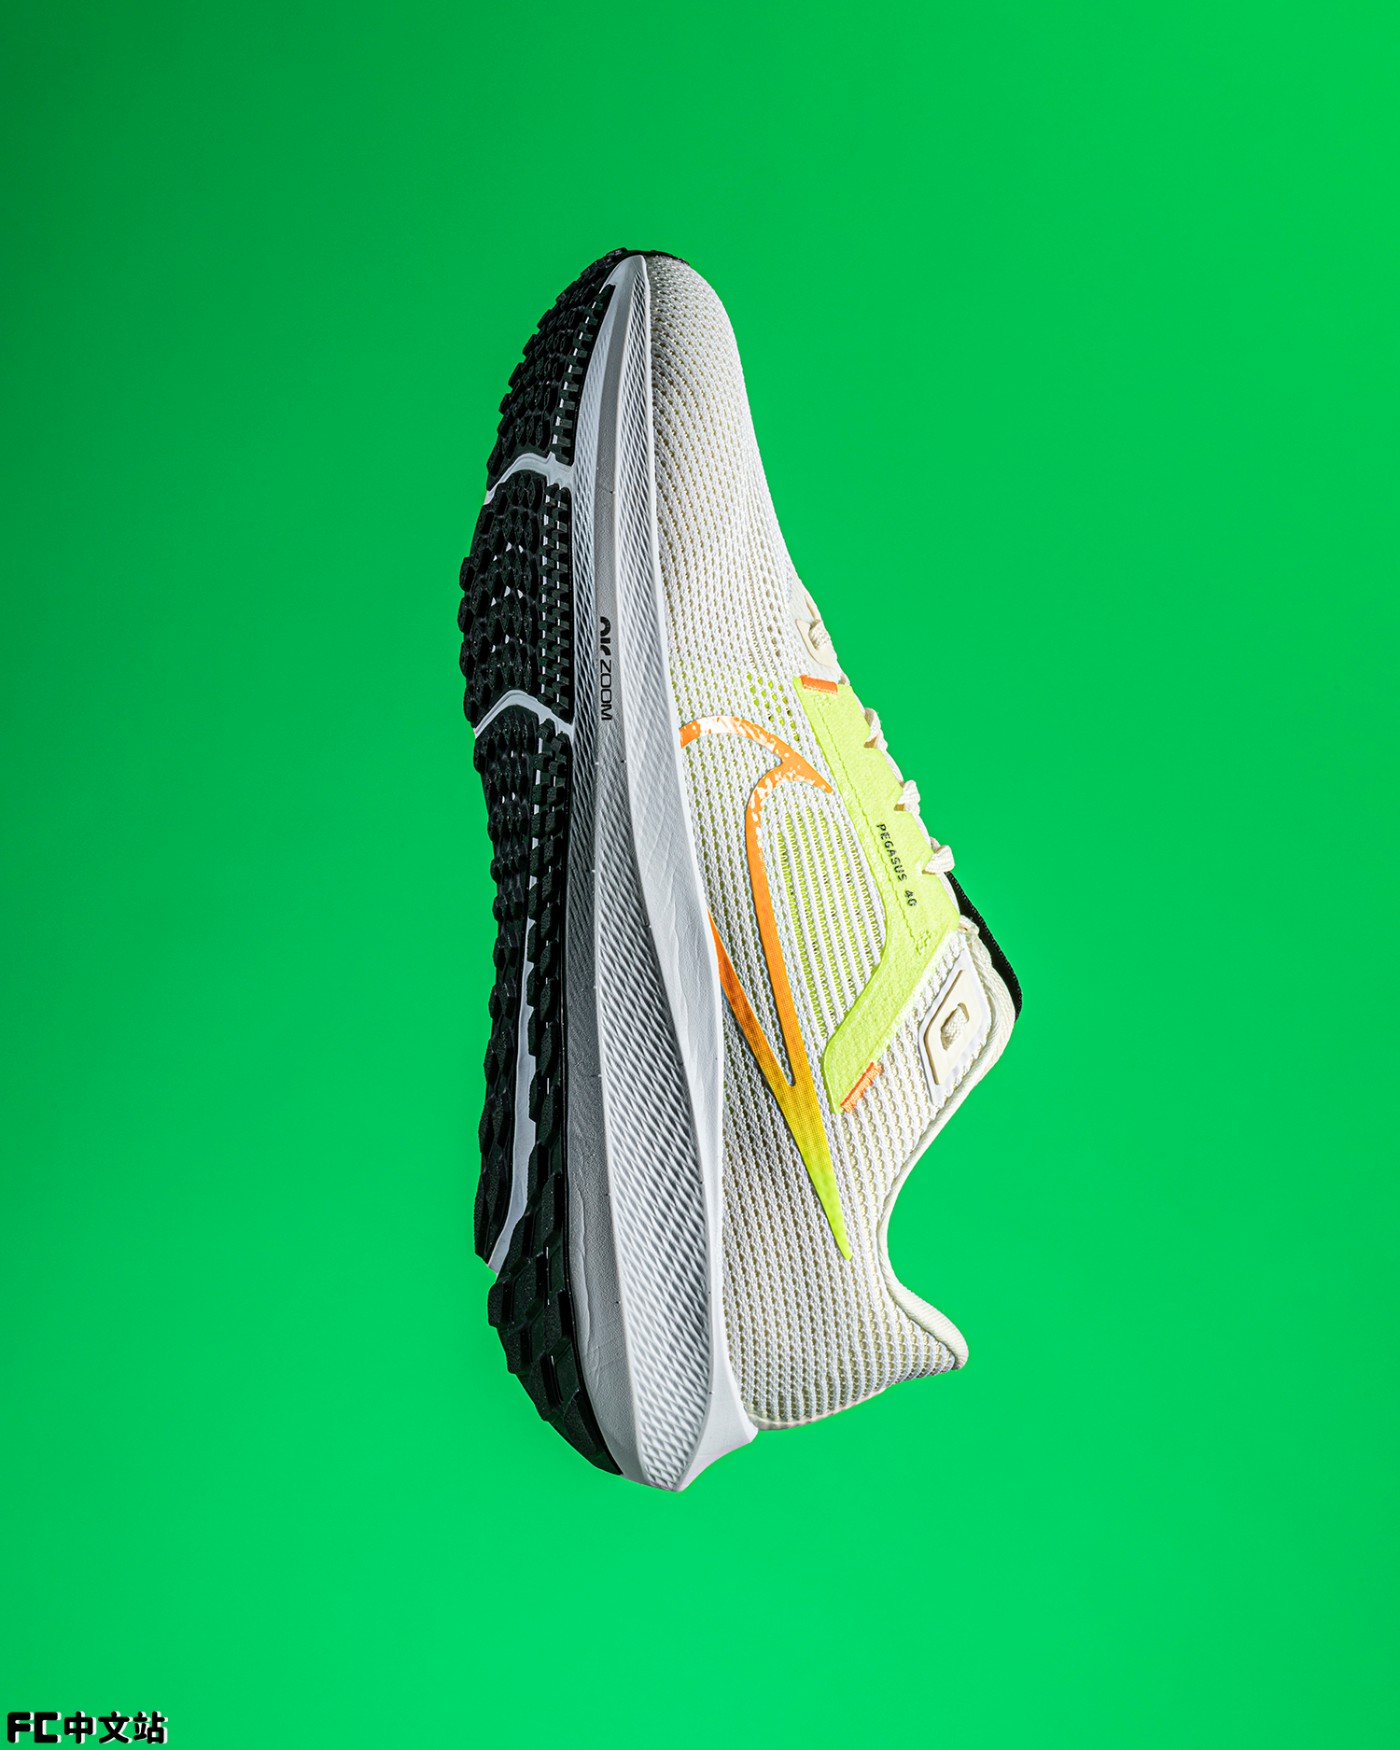 Nike,Pegasus 40,DV3853-101  Nike 火了 40 年的「销量明星」！新鞋刚发布，不少人就准备下单了！